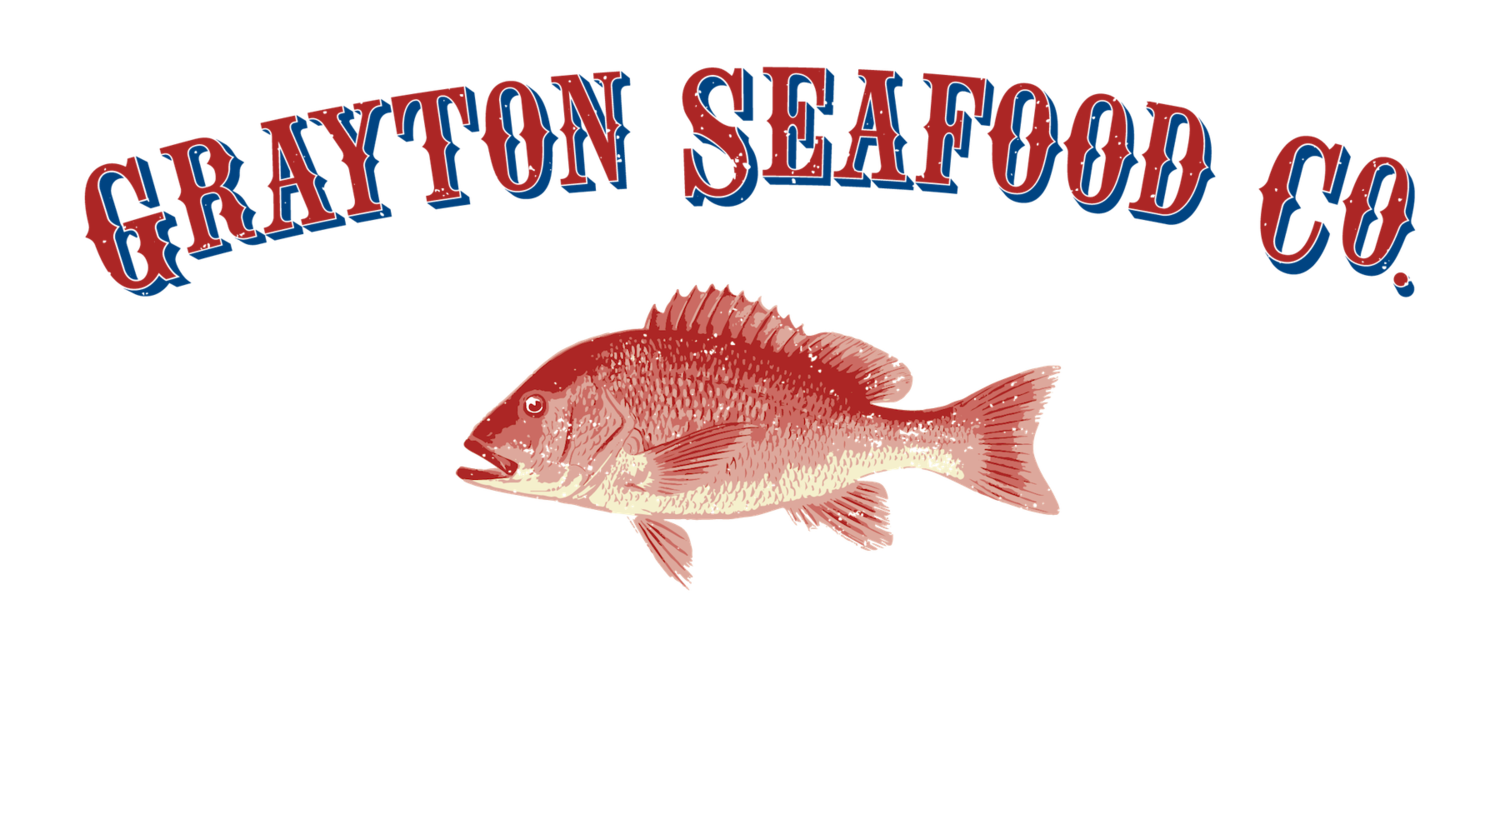 Grayton Seafood Co.